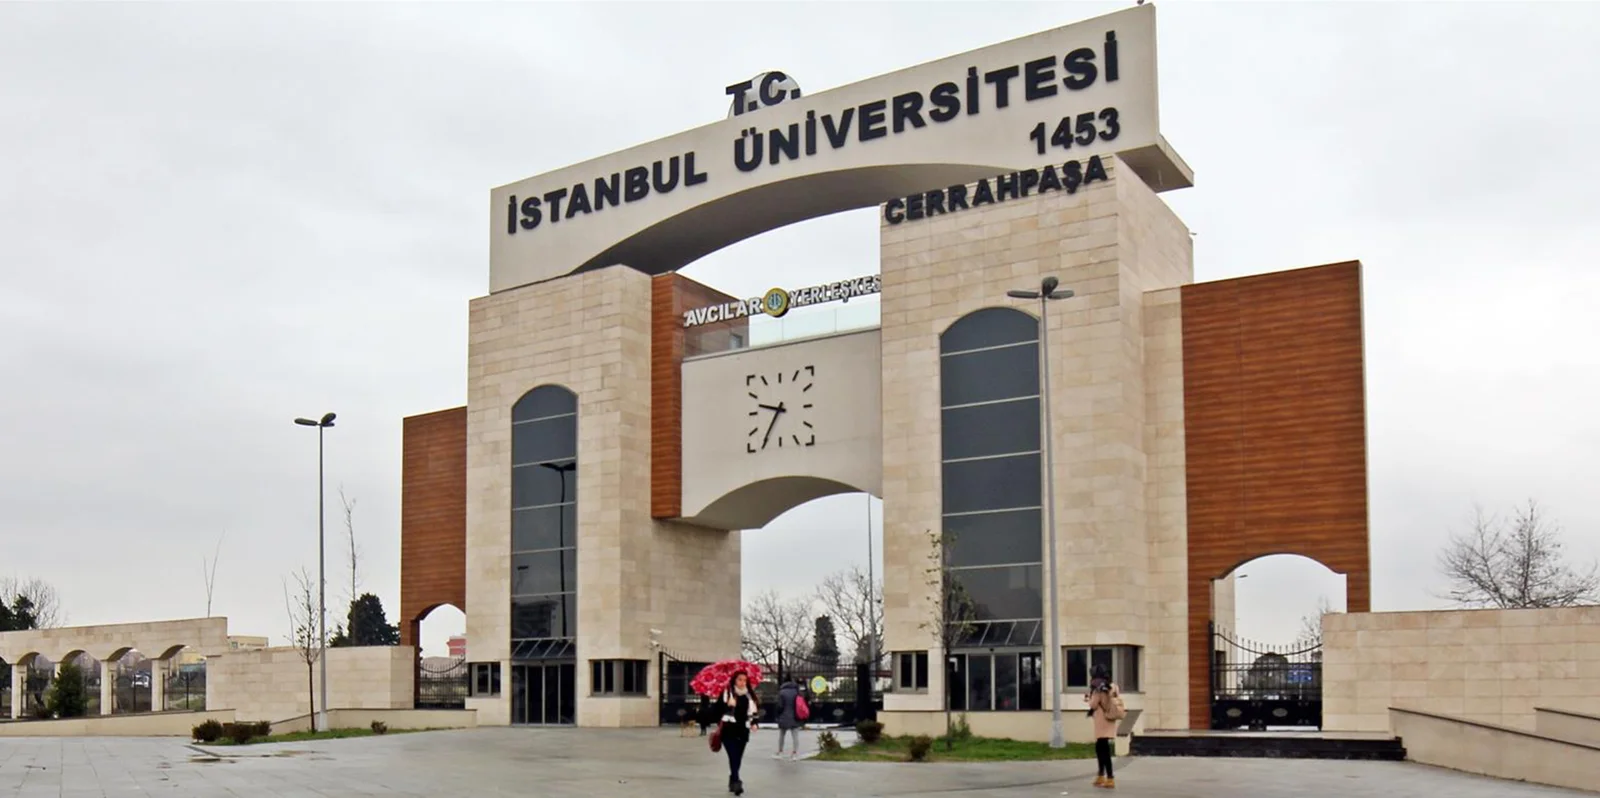 جامعة إسطنبول جراح باشا